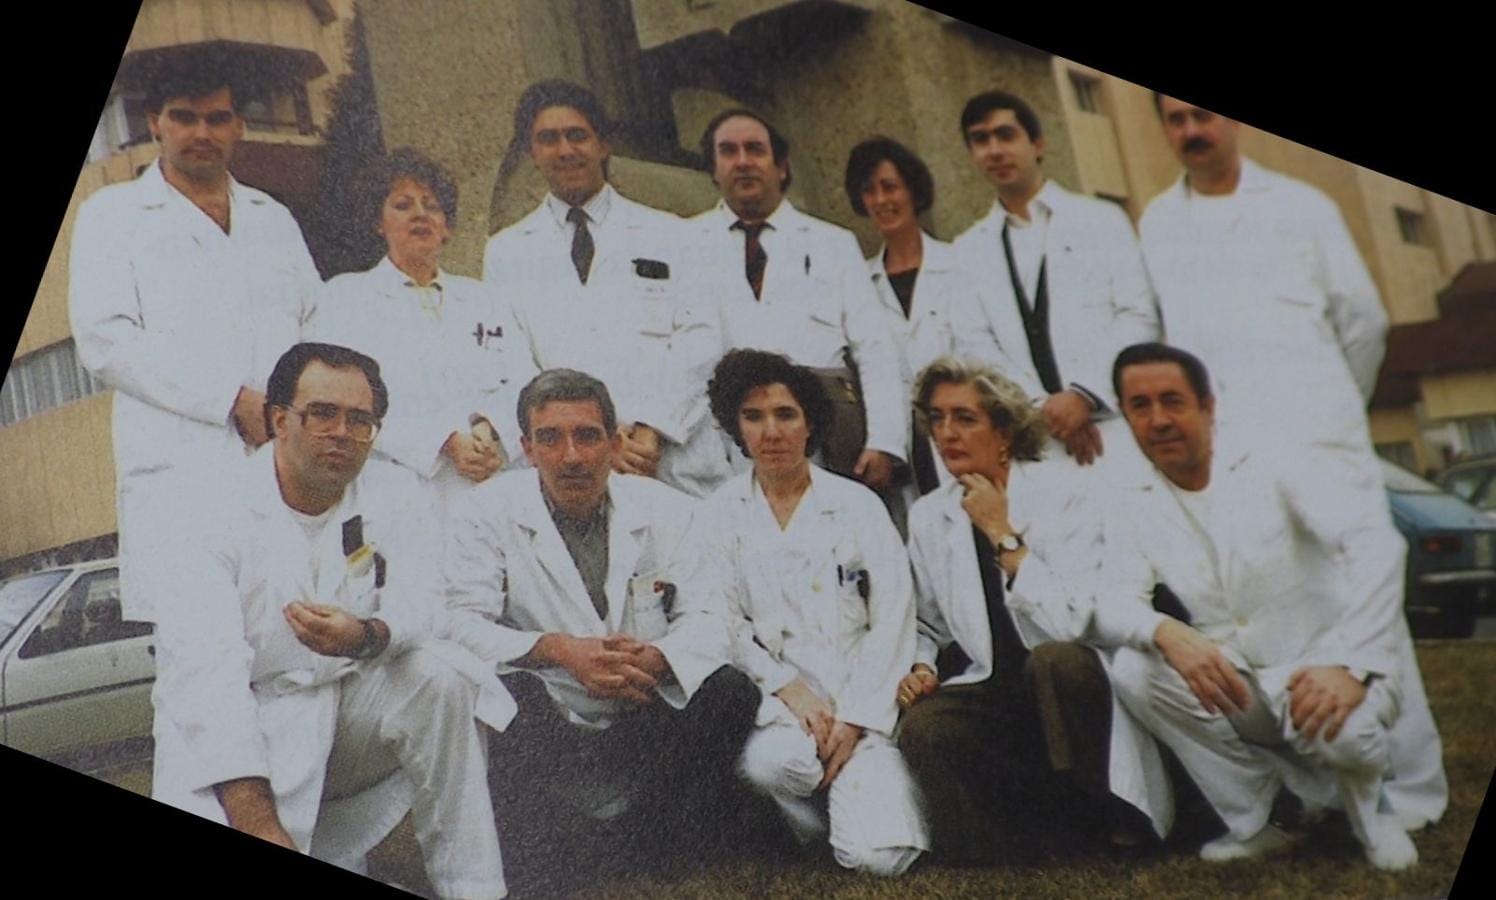 Equipo de profesionales del Hospital, años atrás.